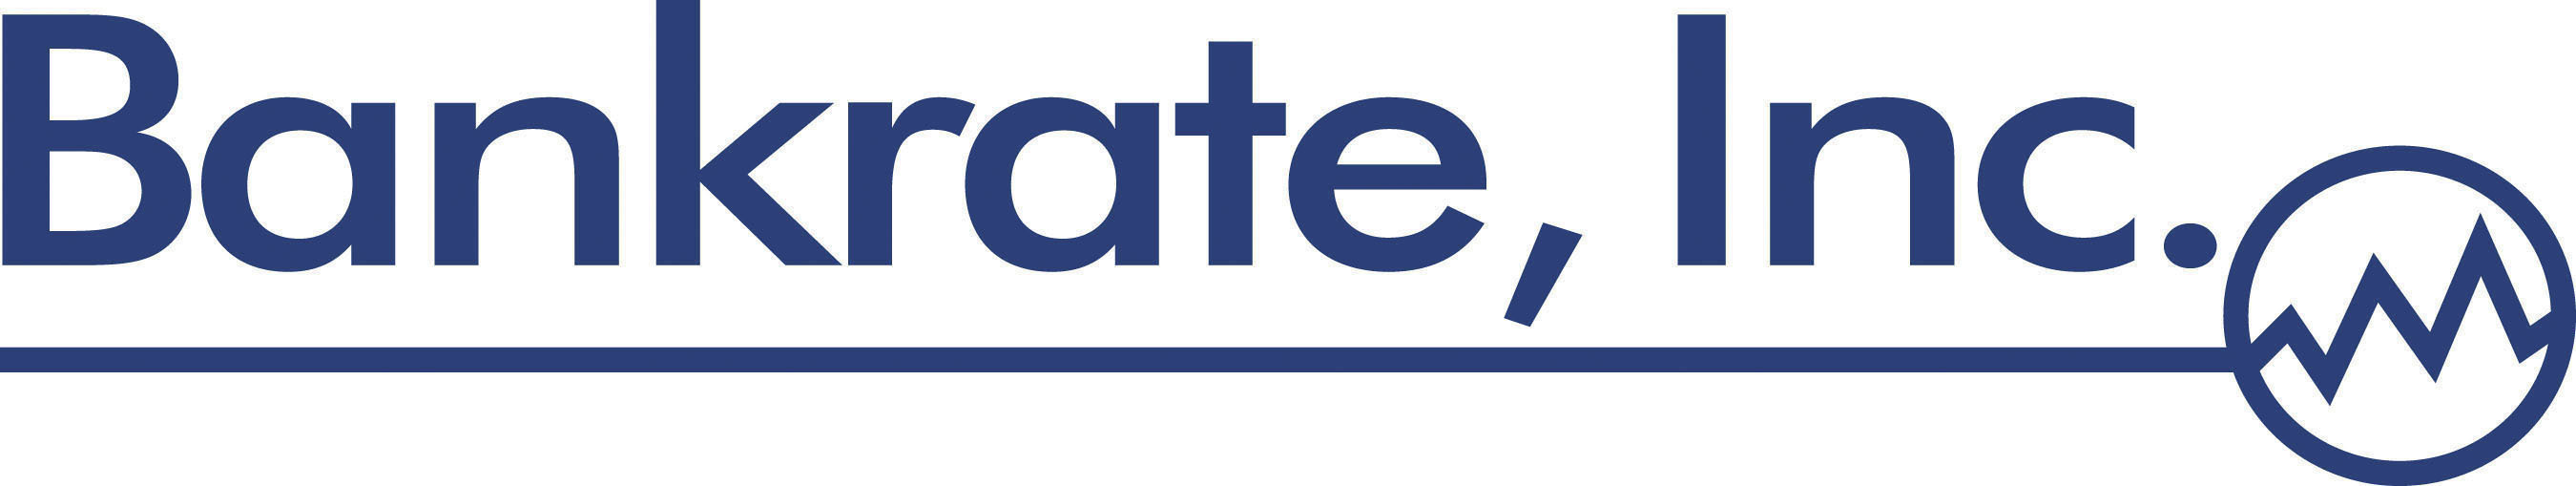 Bankrate, Inc. logo.